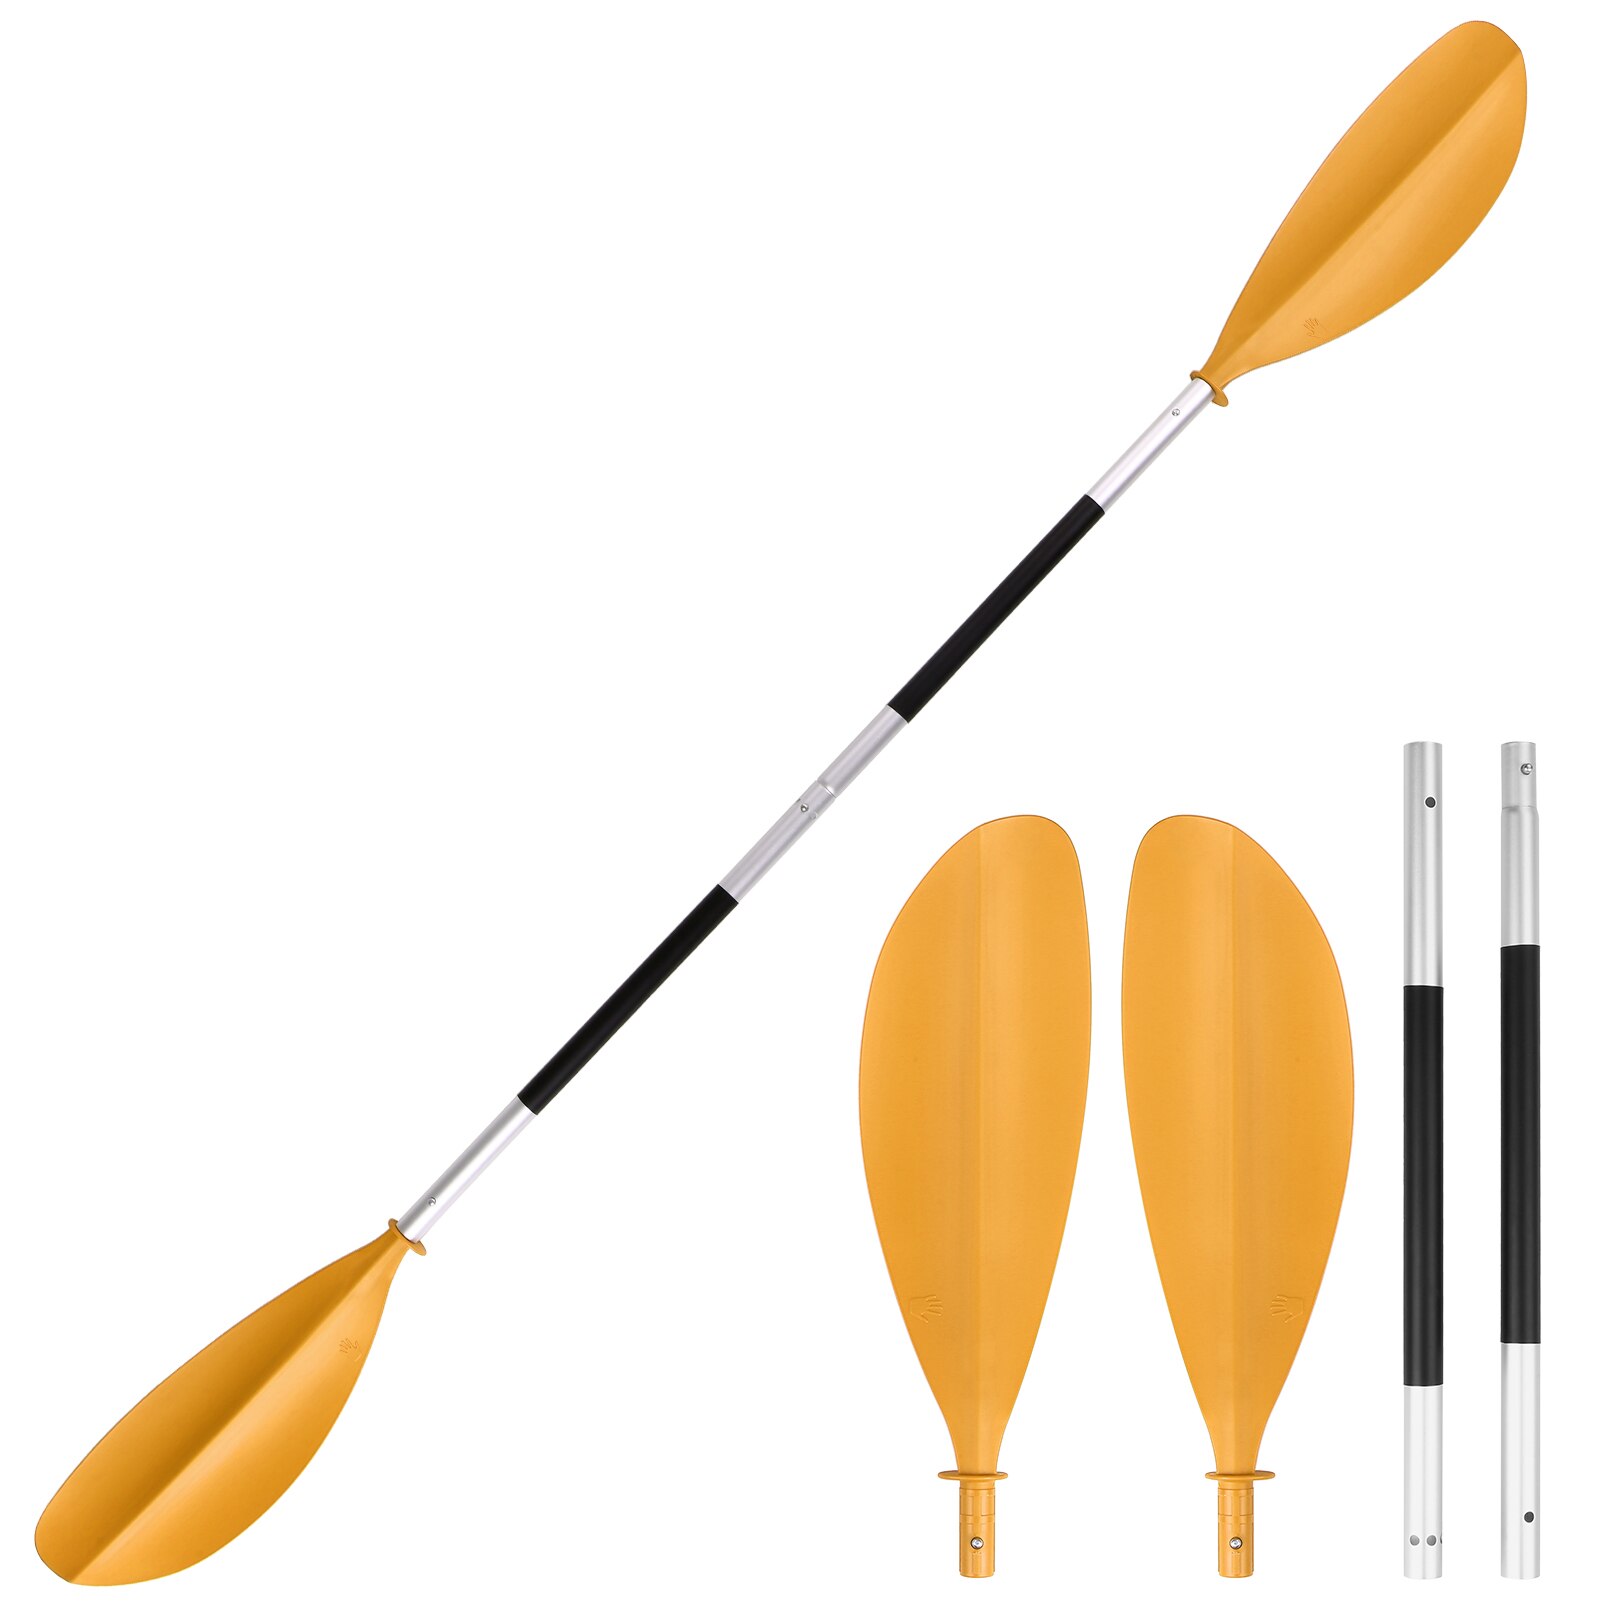 Planche de Kayak asymétrique à dégagement rapide, planche de Paddle gonflable pour bateau, Stand Up pour surf, 4 pièces